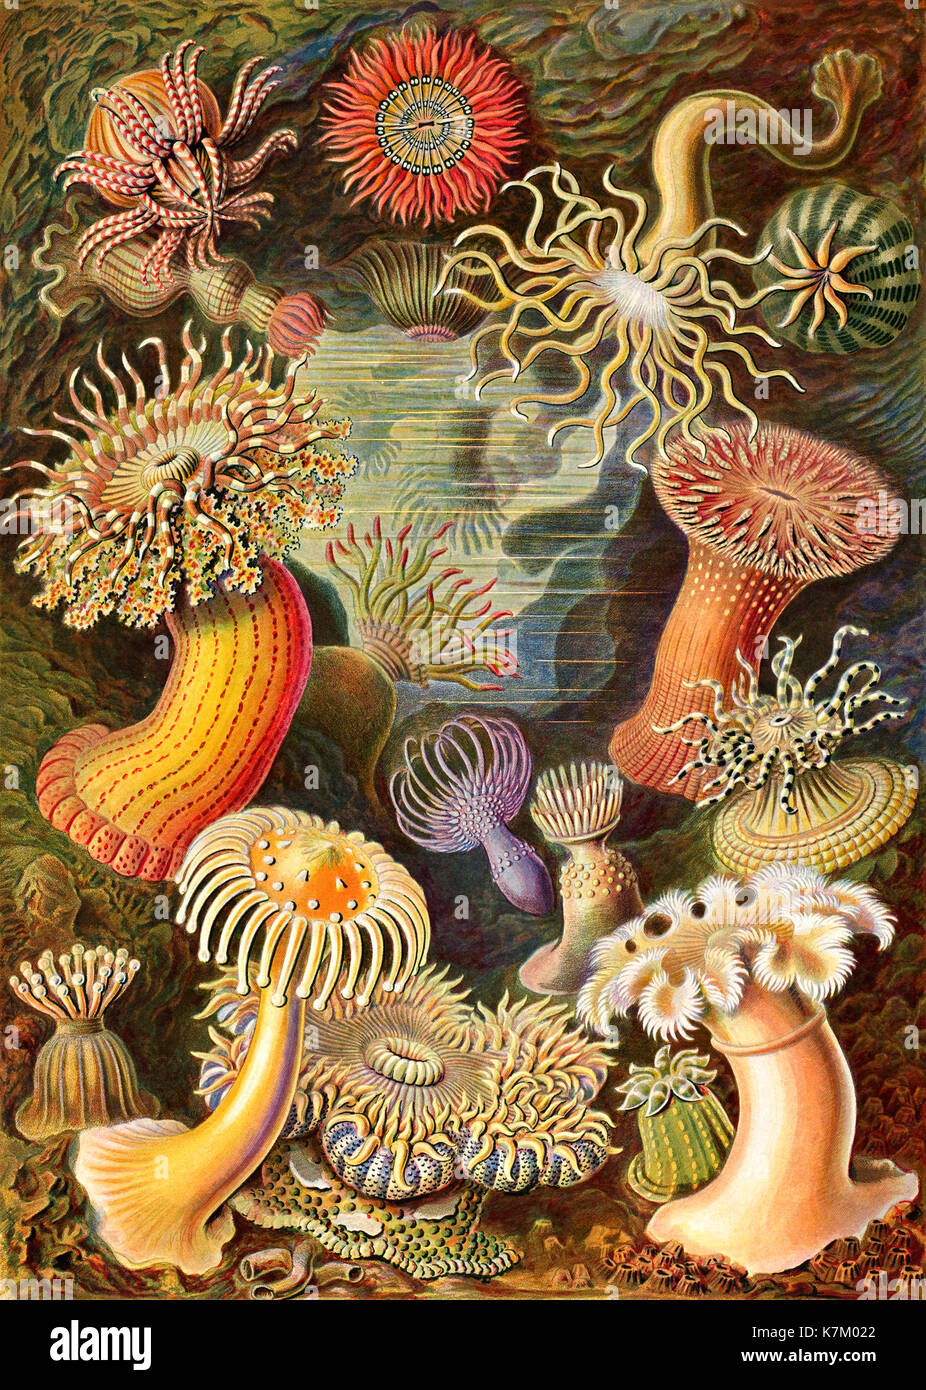 Ernst HAECKEL (1834-1919) biólogo alemán, médico, naturalista. Anémonas marinas de su Kunstforten de Natur (formas de arte de la naturaleza) publicado en 1904 Foto de stock